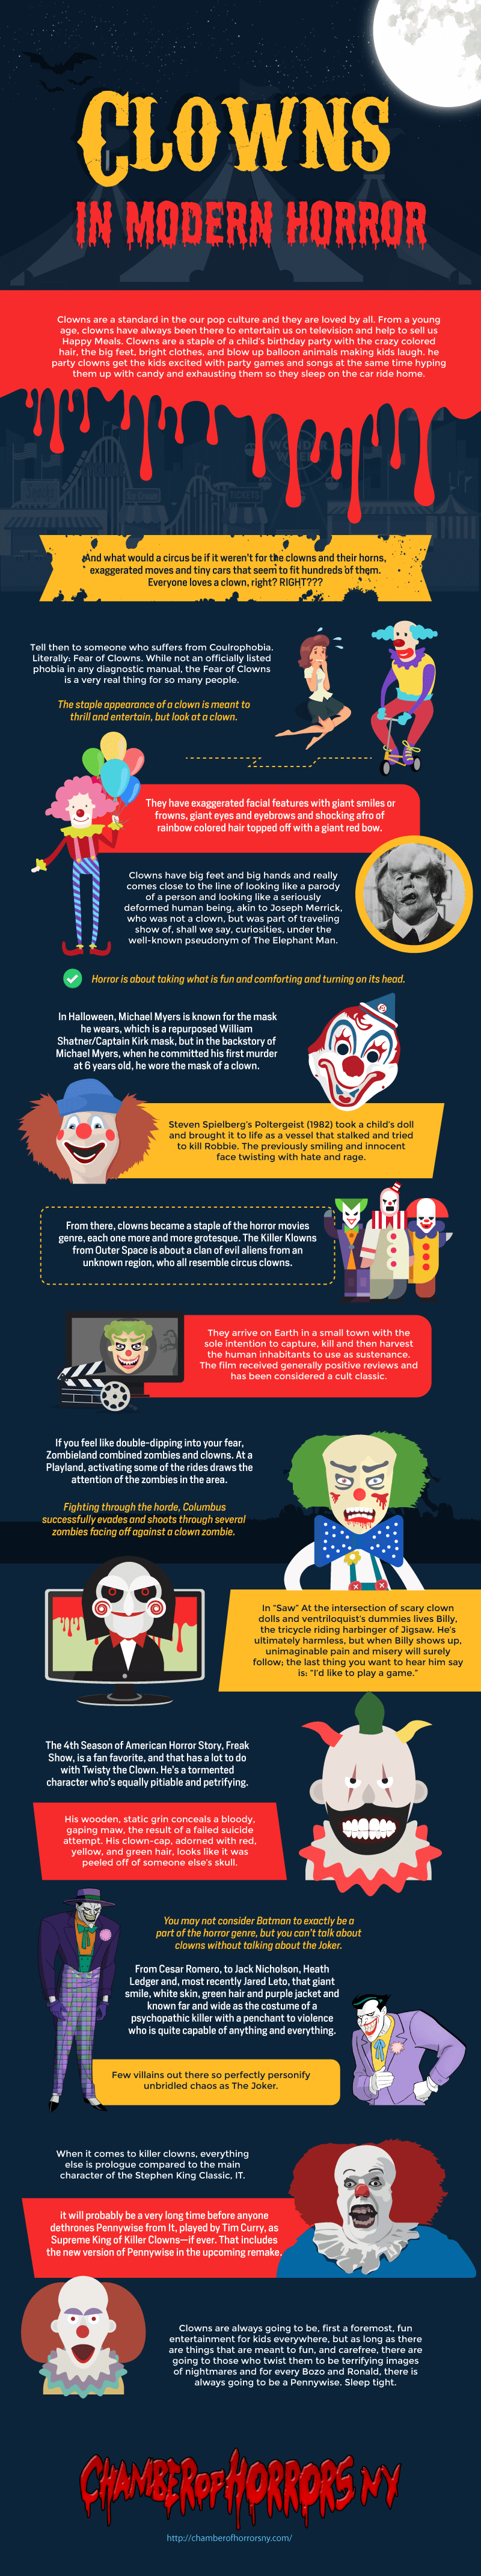 Clowns-in-Modern-Horror